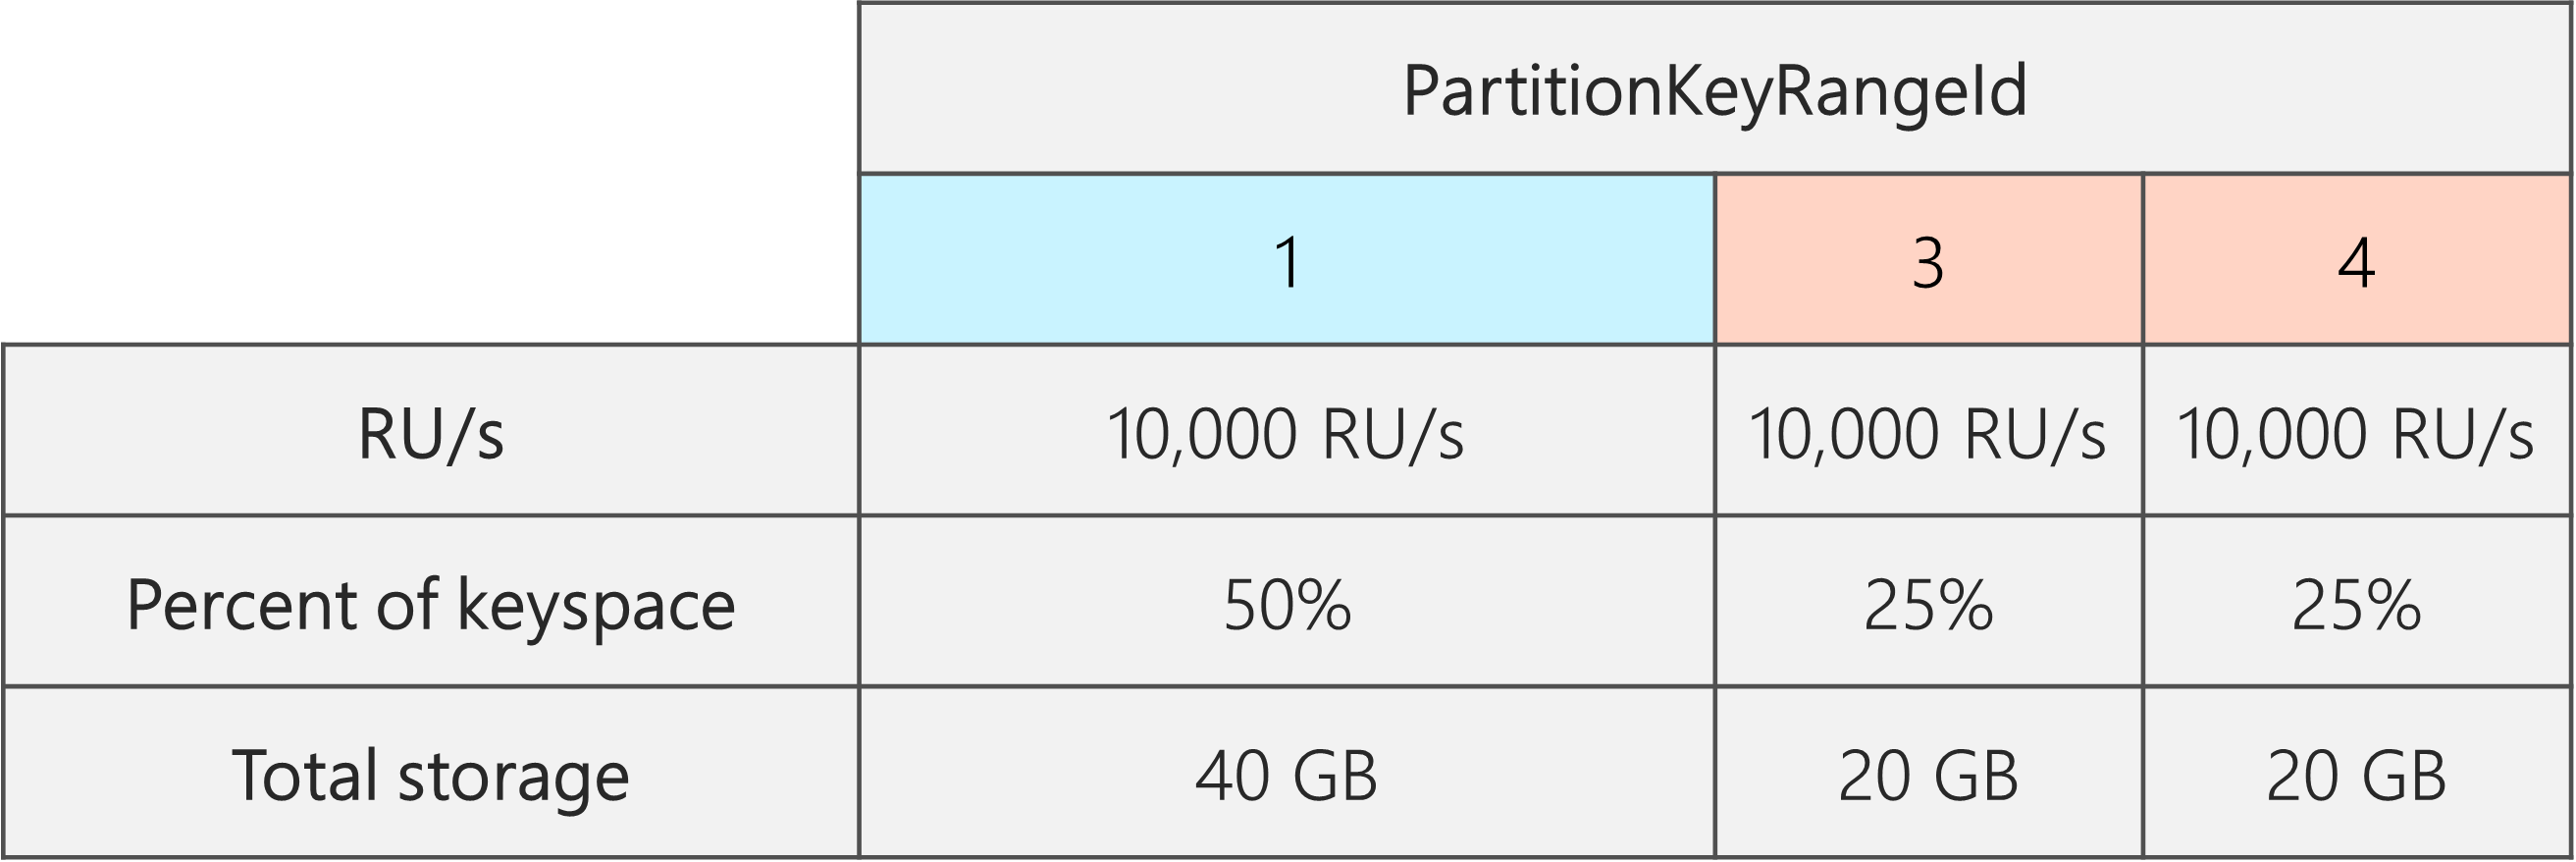 Po rozdělení jsou 3 PartitionKeyRangeIds, z nichž každý má 10 000 RU/s. Jeden z PartitionKeyRangeId má ale 50 % celkového prostoru klíčů (40 GB), zatímco dva z PartitionKeyRangeId mají 25 % z celkového prostoru klíčů (20 GB).